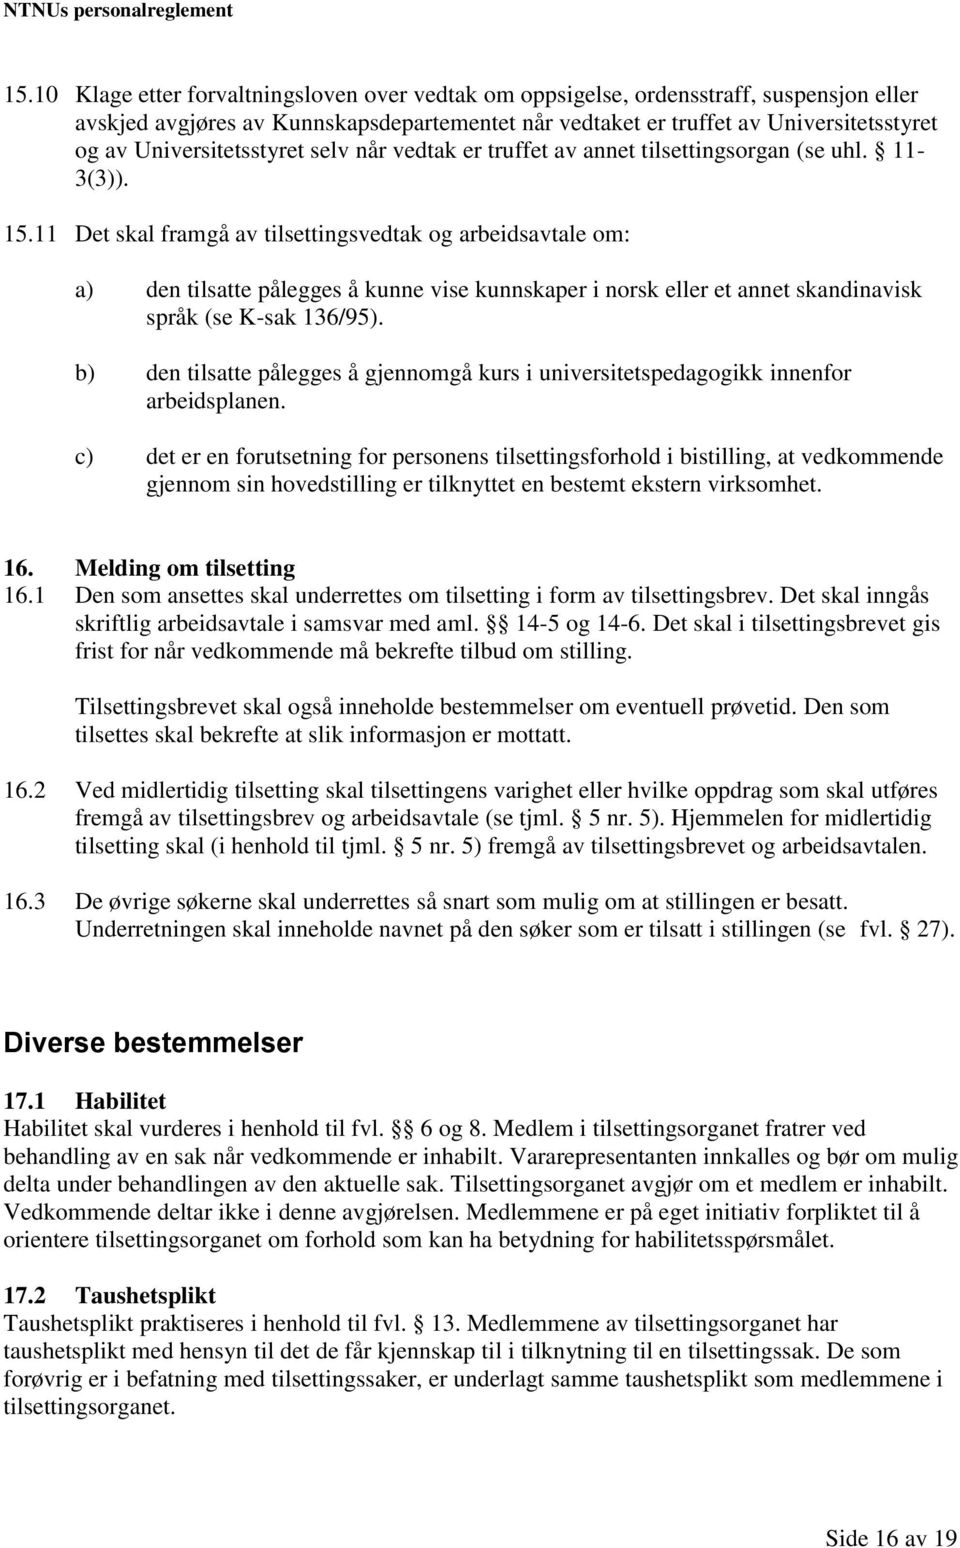 11 Det skal framgå av tilsettingsvedtak og arbeidsavtale om: a) den tilsatte pålegges å kunne vise kunnskaper i norsk eller et annet skandinavisk språk (se K-sak 136/95).